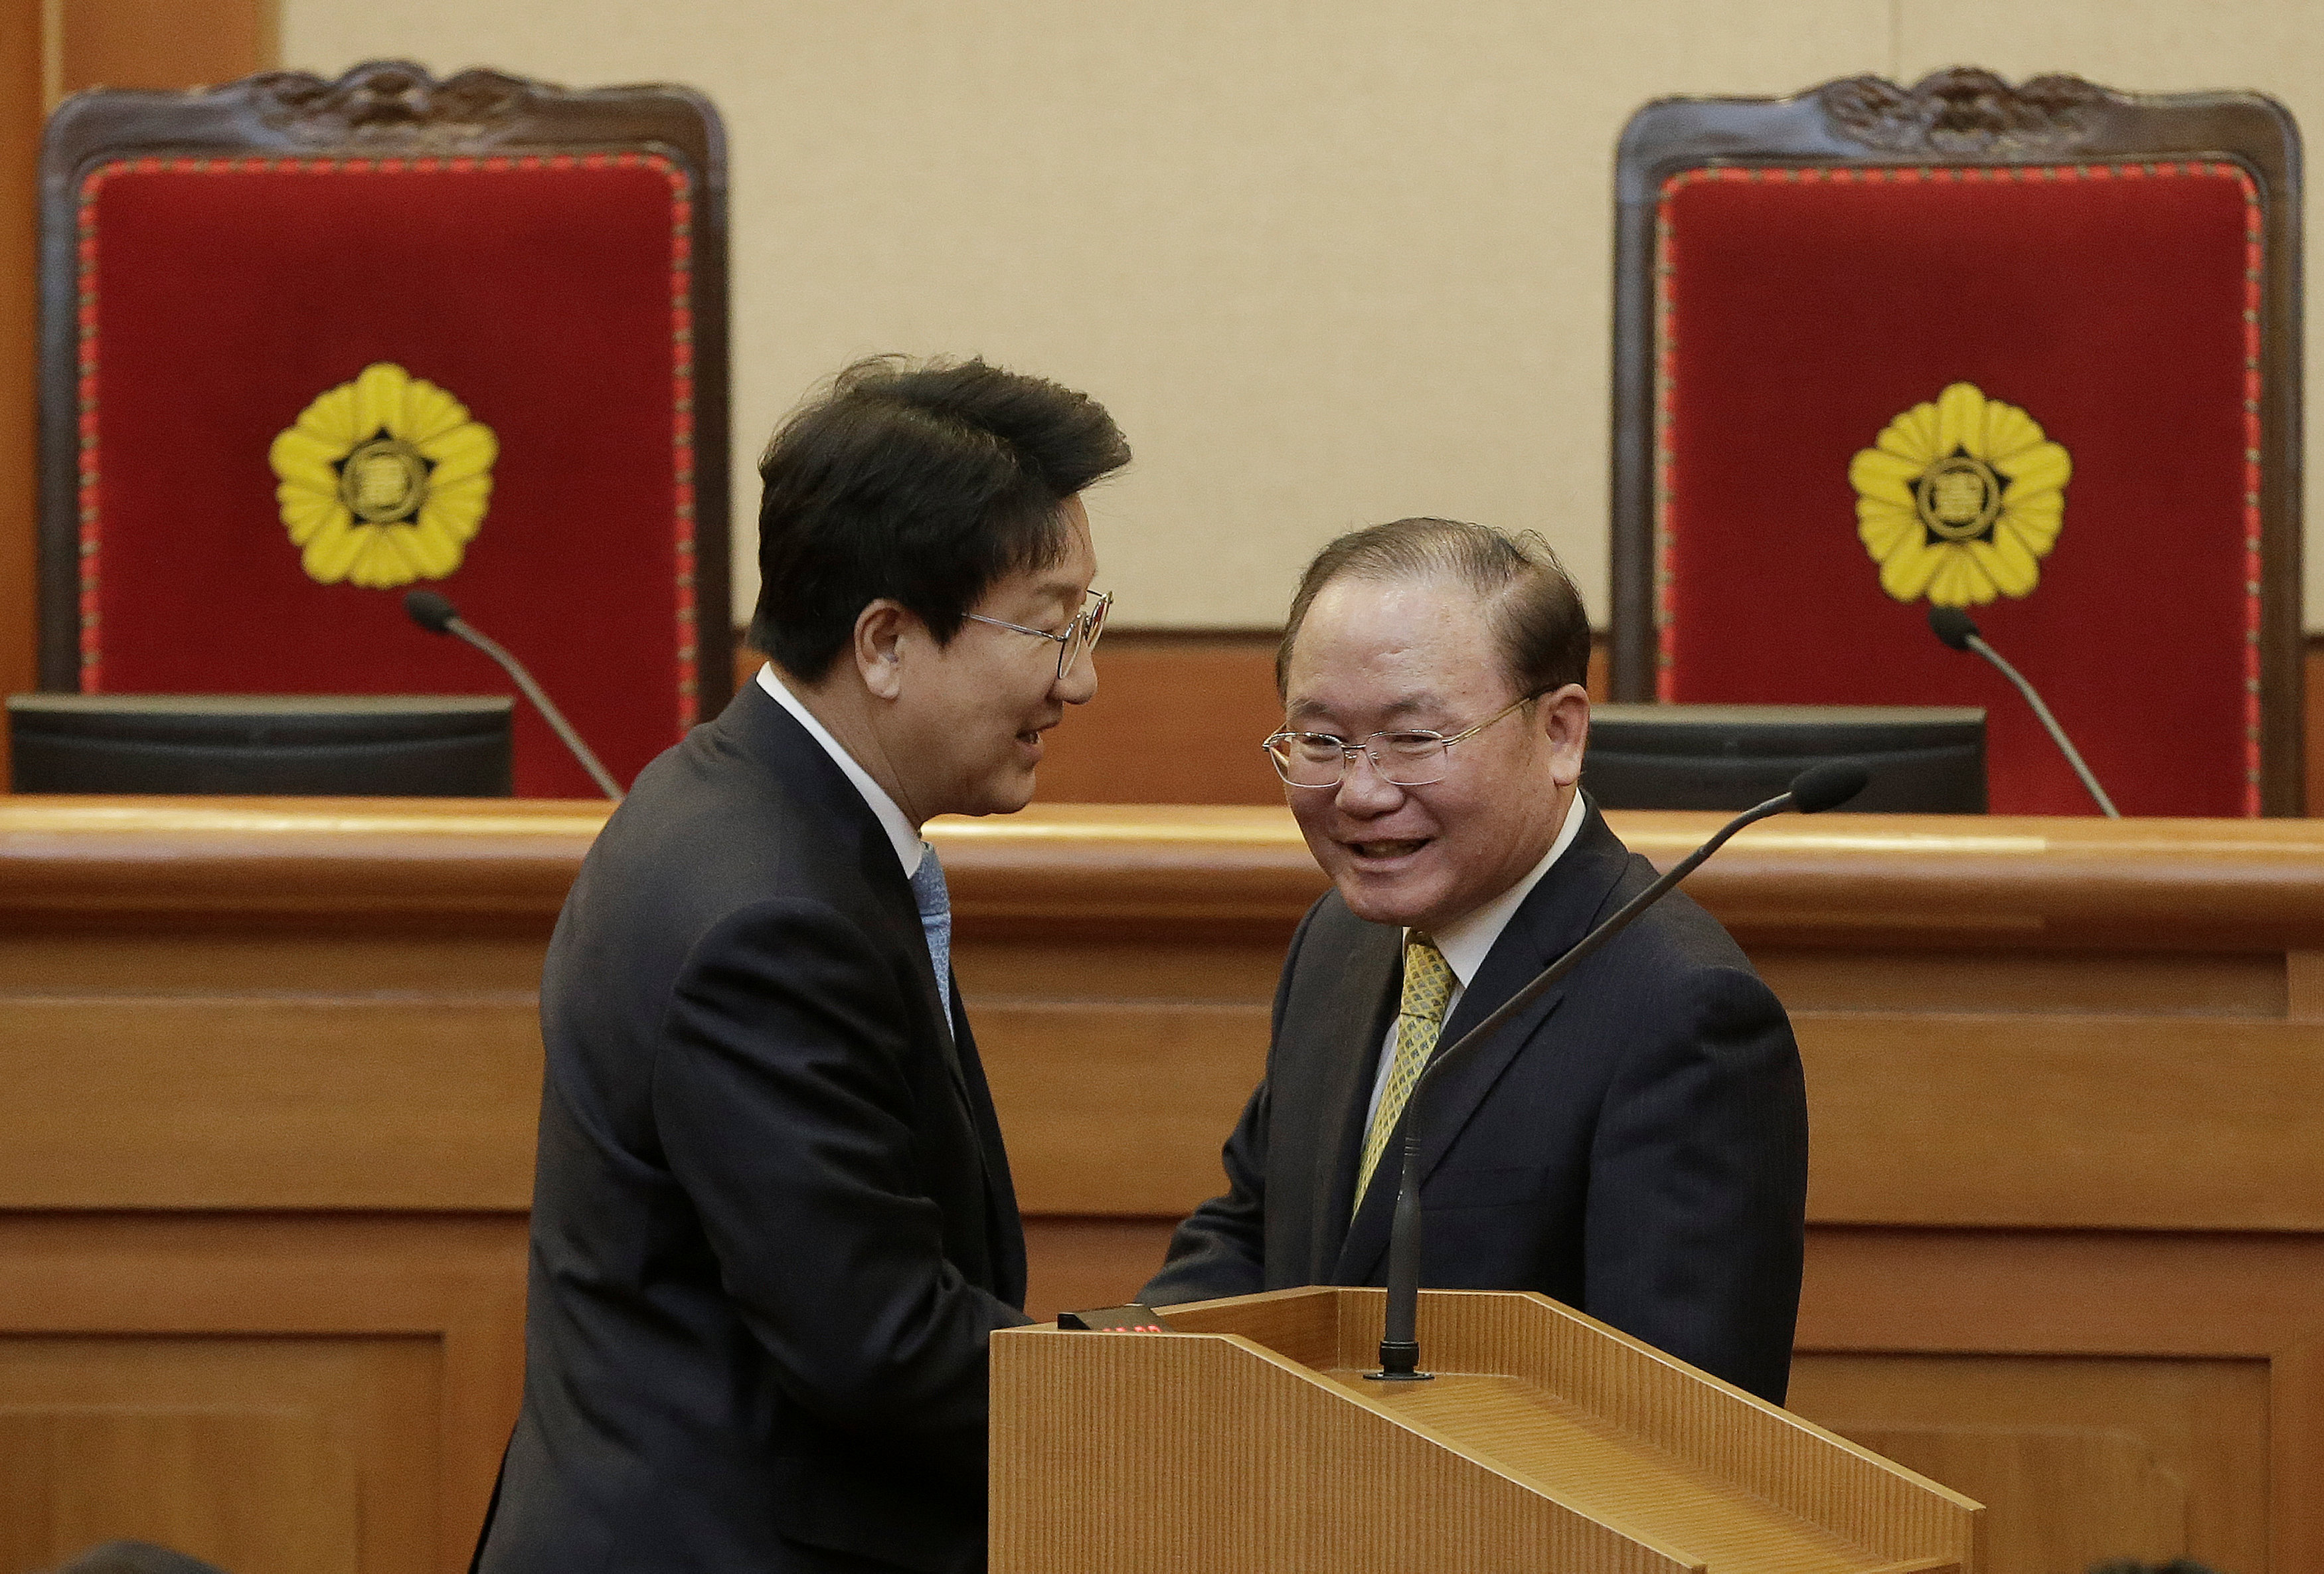 لى جونج رئيس المحكمو الدستورية الكورية الجنوبية ورئيس لجنة القضاء فى المجلس الوطنى كوون سونج دونج